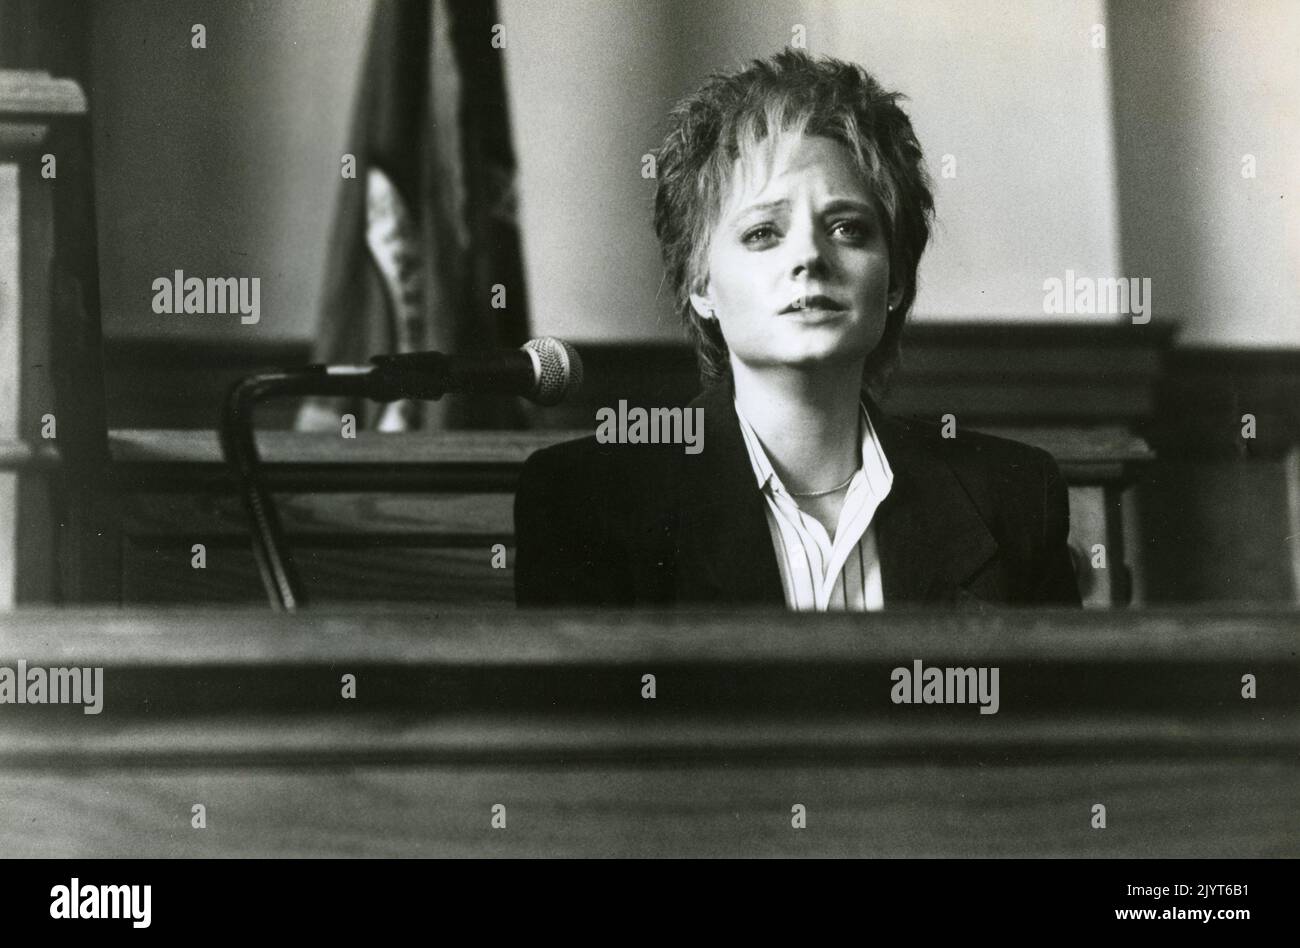 La actriz estadounidense Jodie Foster en la película El acusado, EE.UU. 1988 Foto de stock